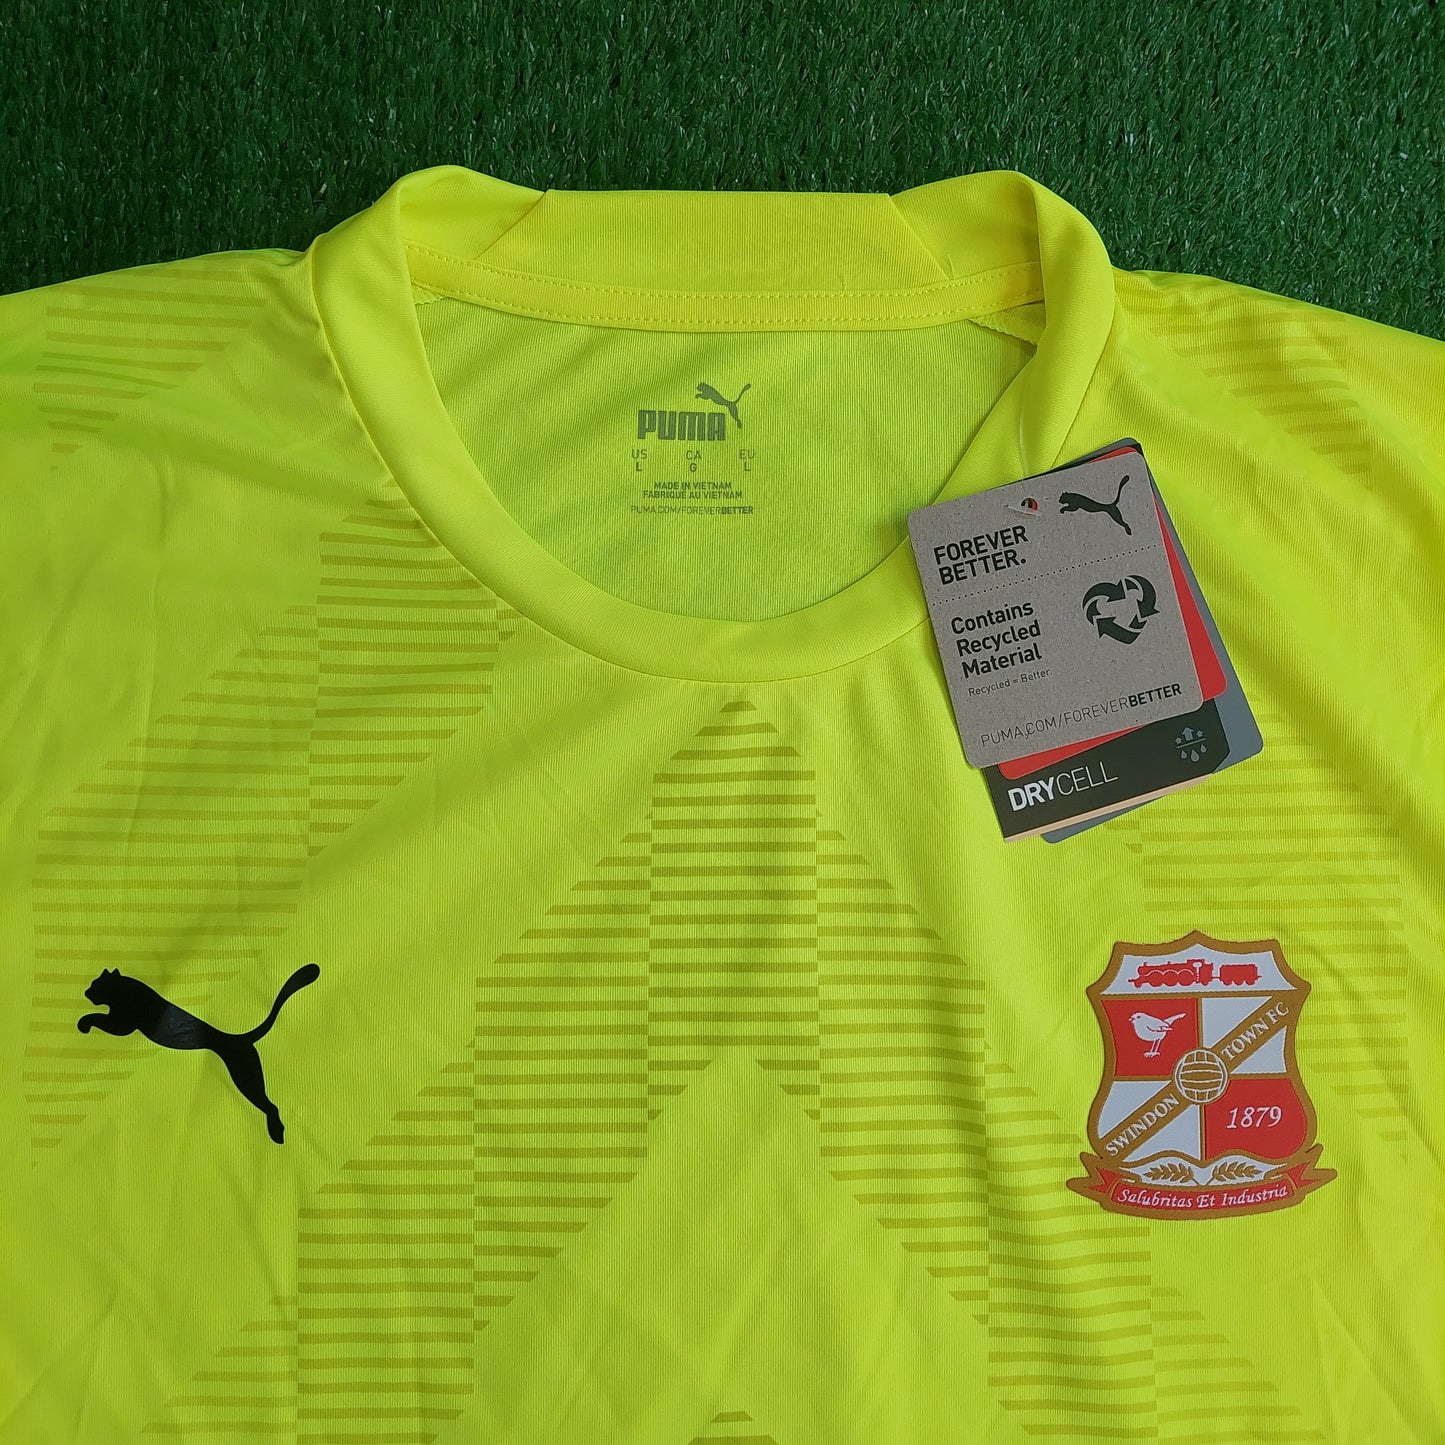 Swindon Town 2022/23 Goalkeeper/GK *Sponsorless* Shirt (BNWT) - Size M